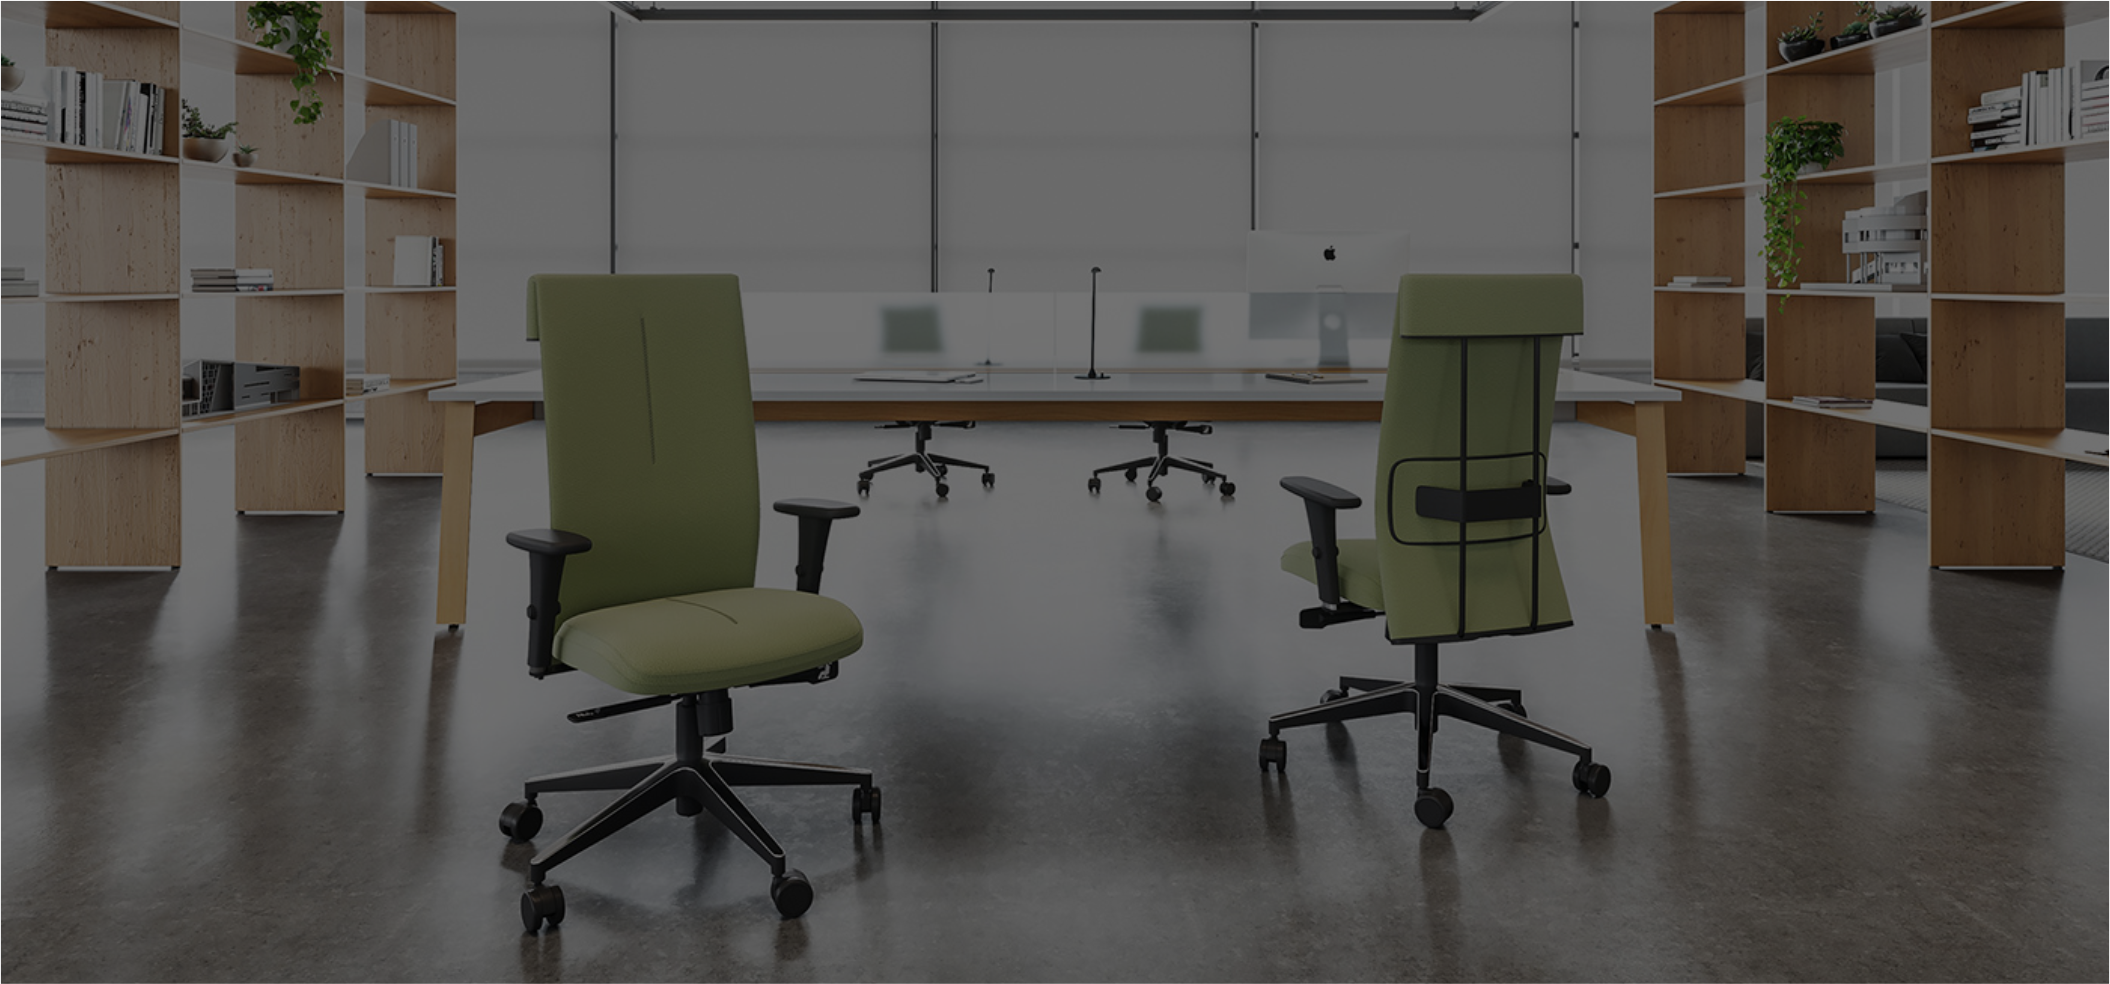 Como ter mais conforto no home office? Saiba como escolher a melhor cadeira e ter uma rotina produtiva.